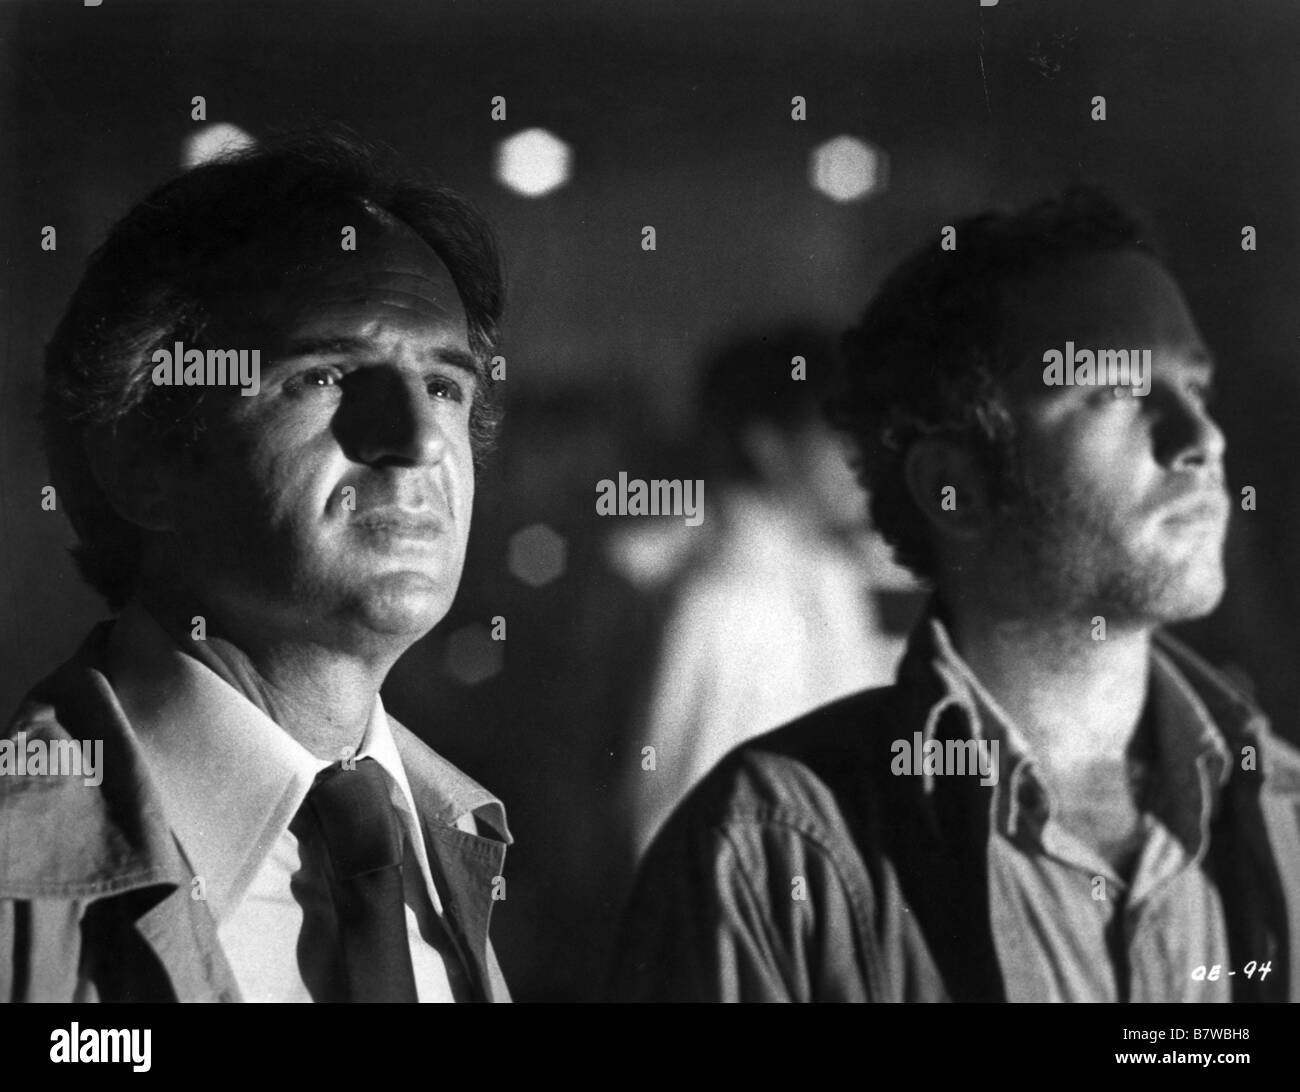 Incontri ravvicinati del terzo tipo Anno: 1977 USA Direttore: Steven Spielberg François Truffaut, Richard Dreyfuss Foto Stock